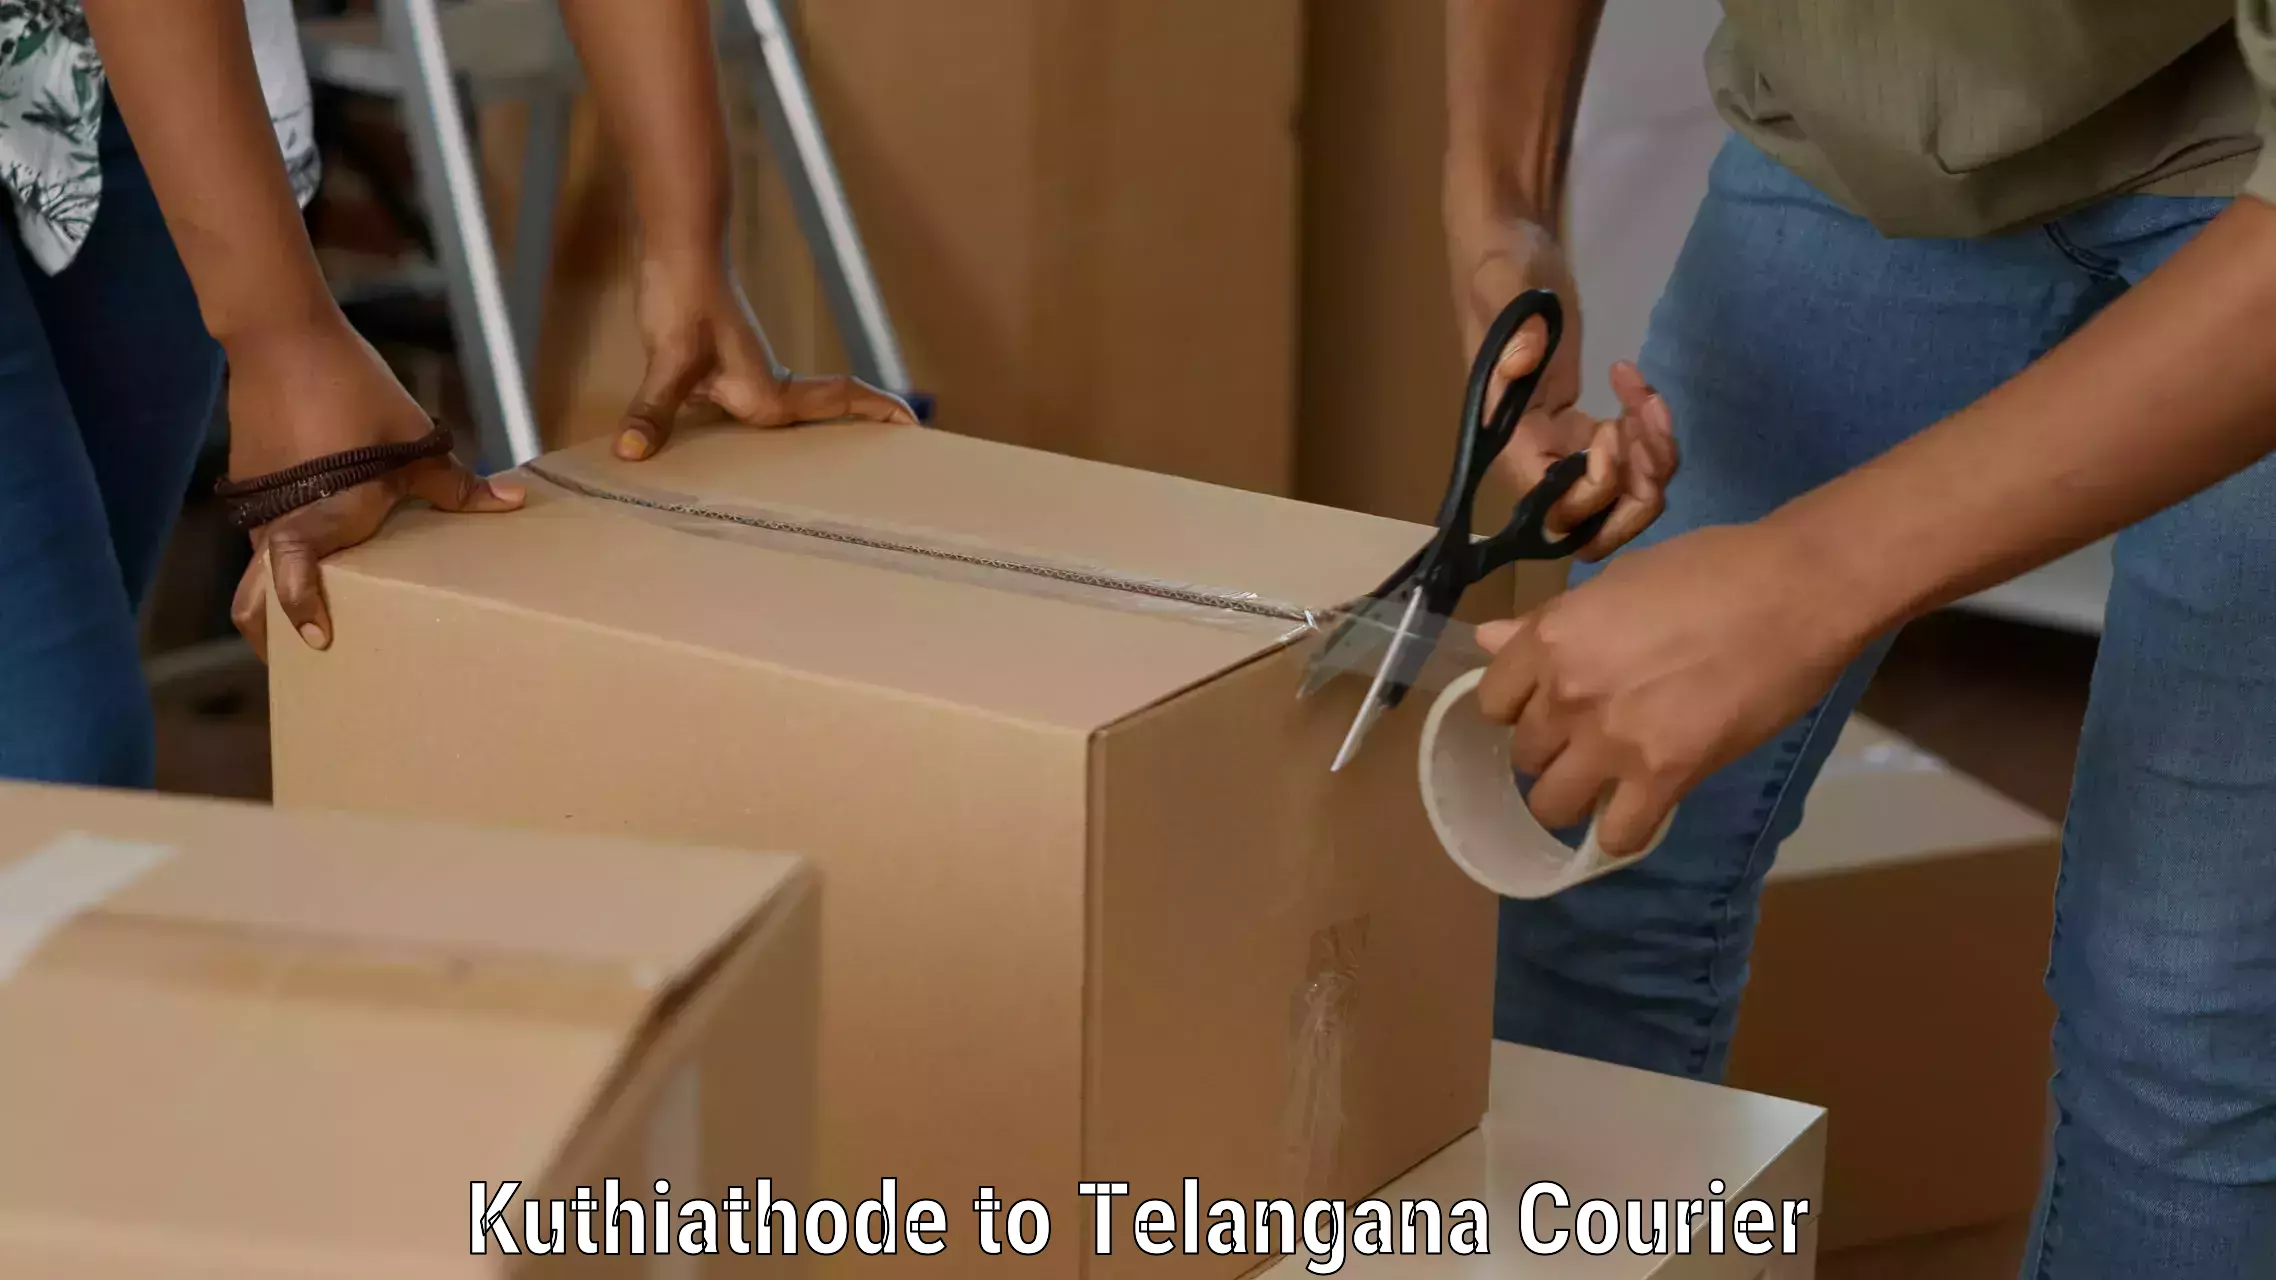 Courier service partnerships Kuthiathode to Adilabad